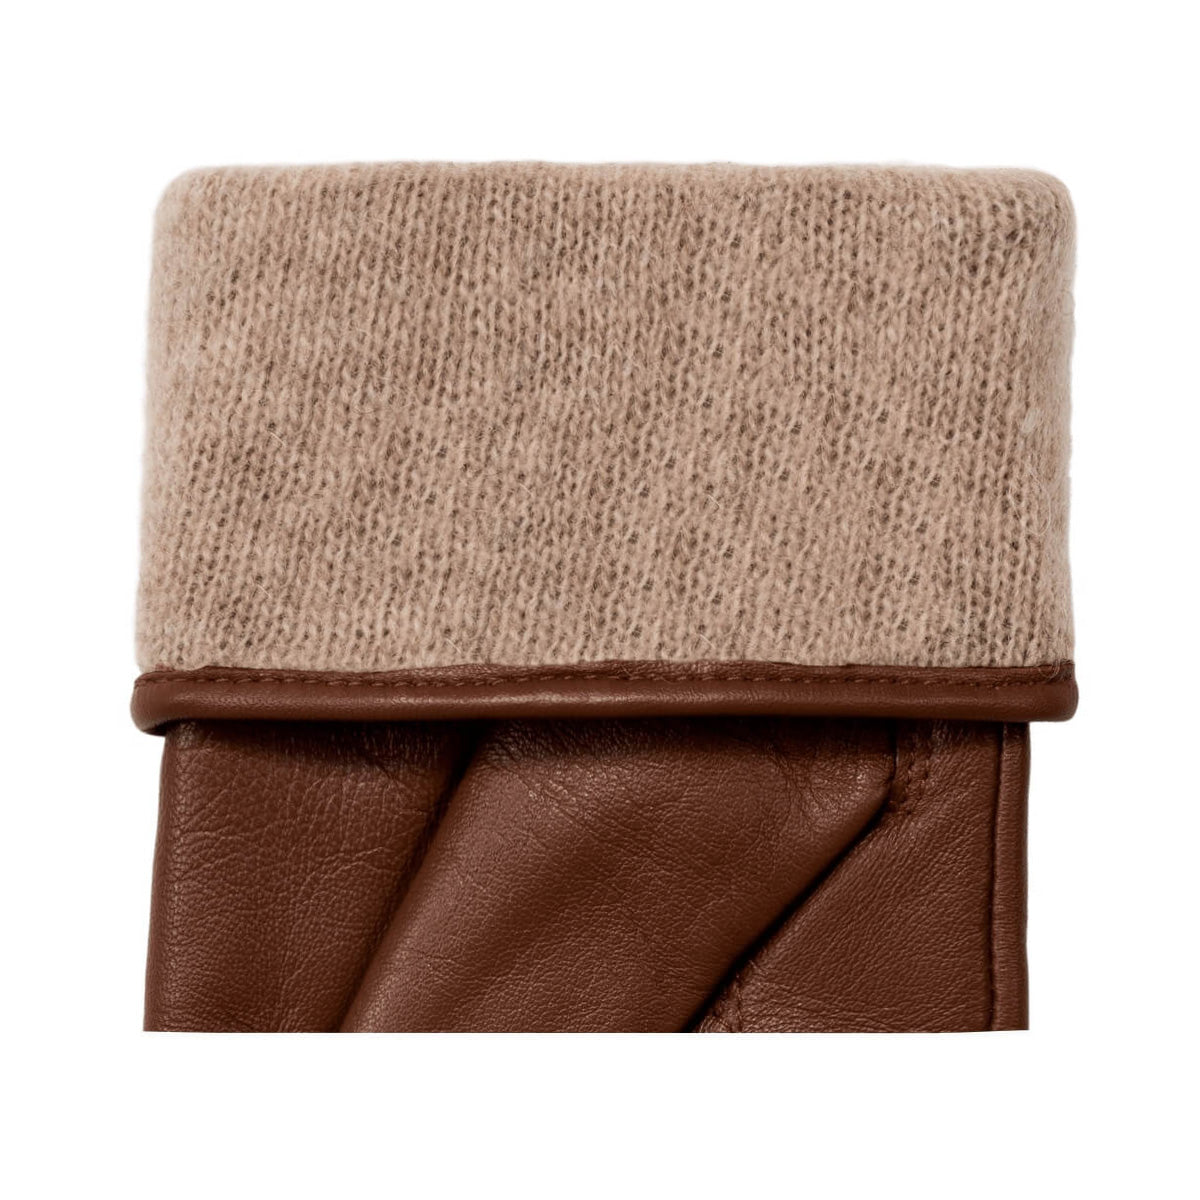 Victoria (marron) - Gants tactiles en cuir de mouton et doublure en laine/cachemire